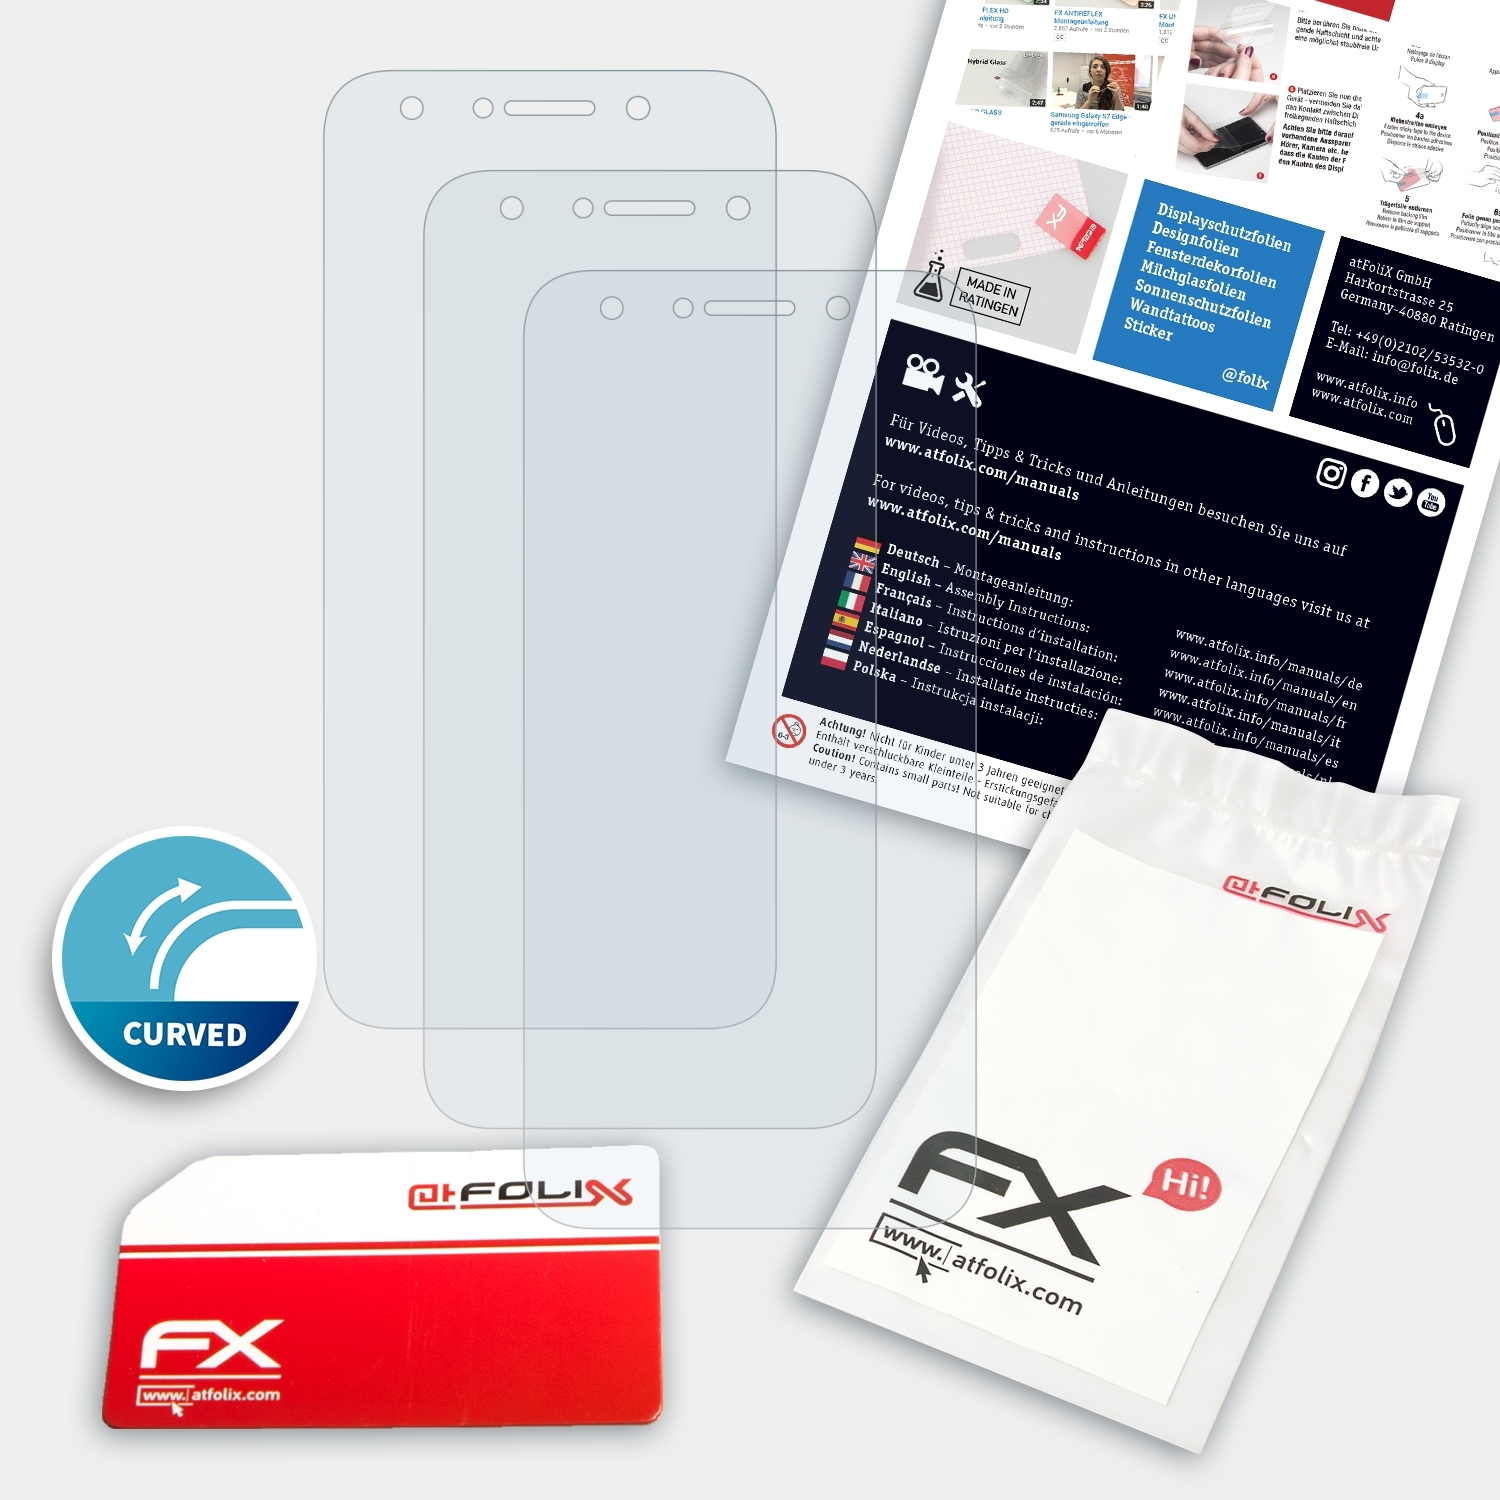 ATFOLIX 3x FX-ActiFleX Displayschutz(für G6) BLU